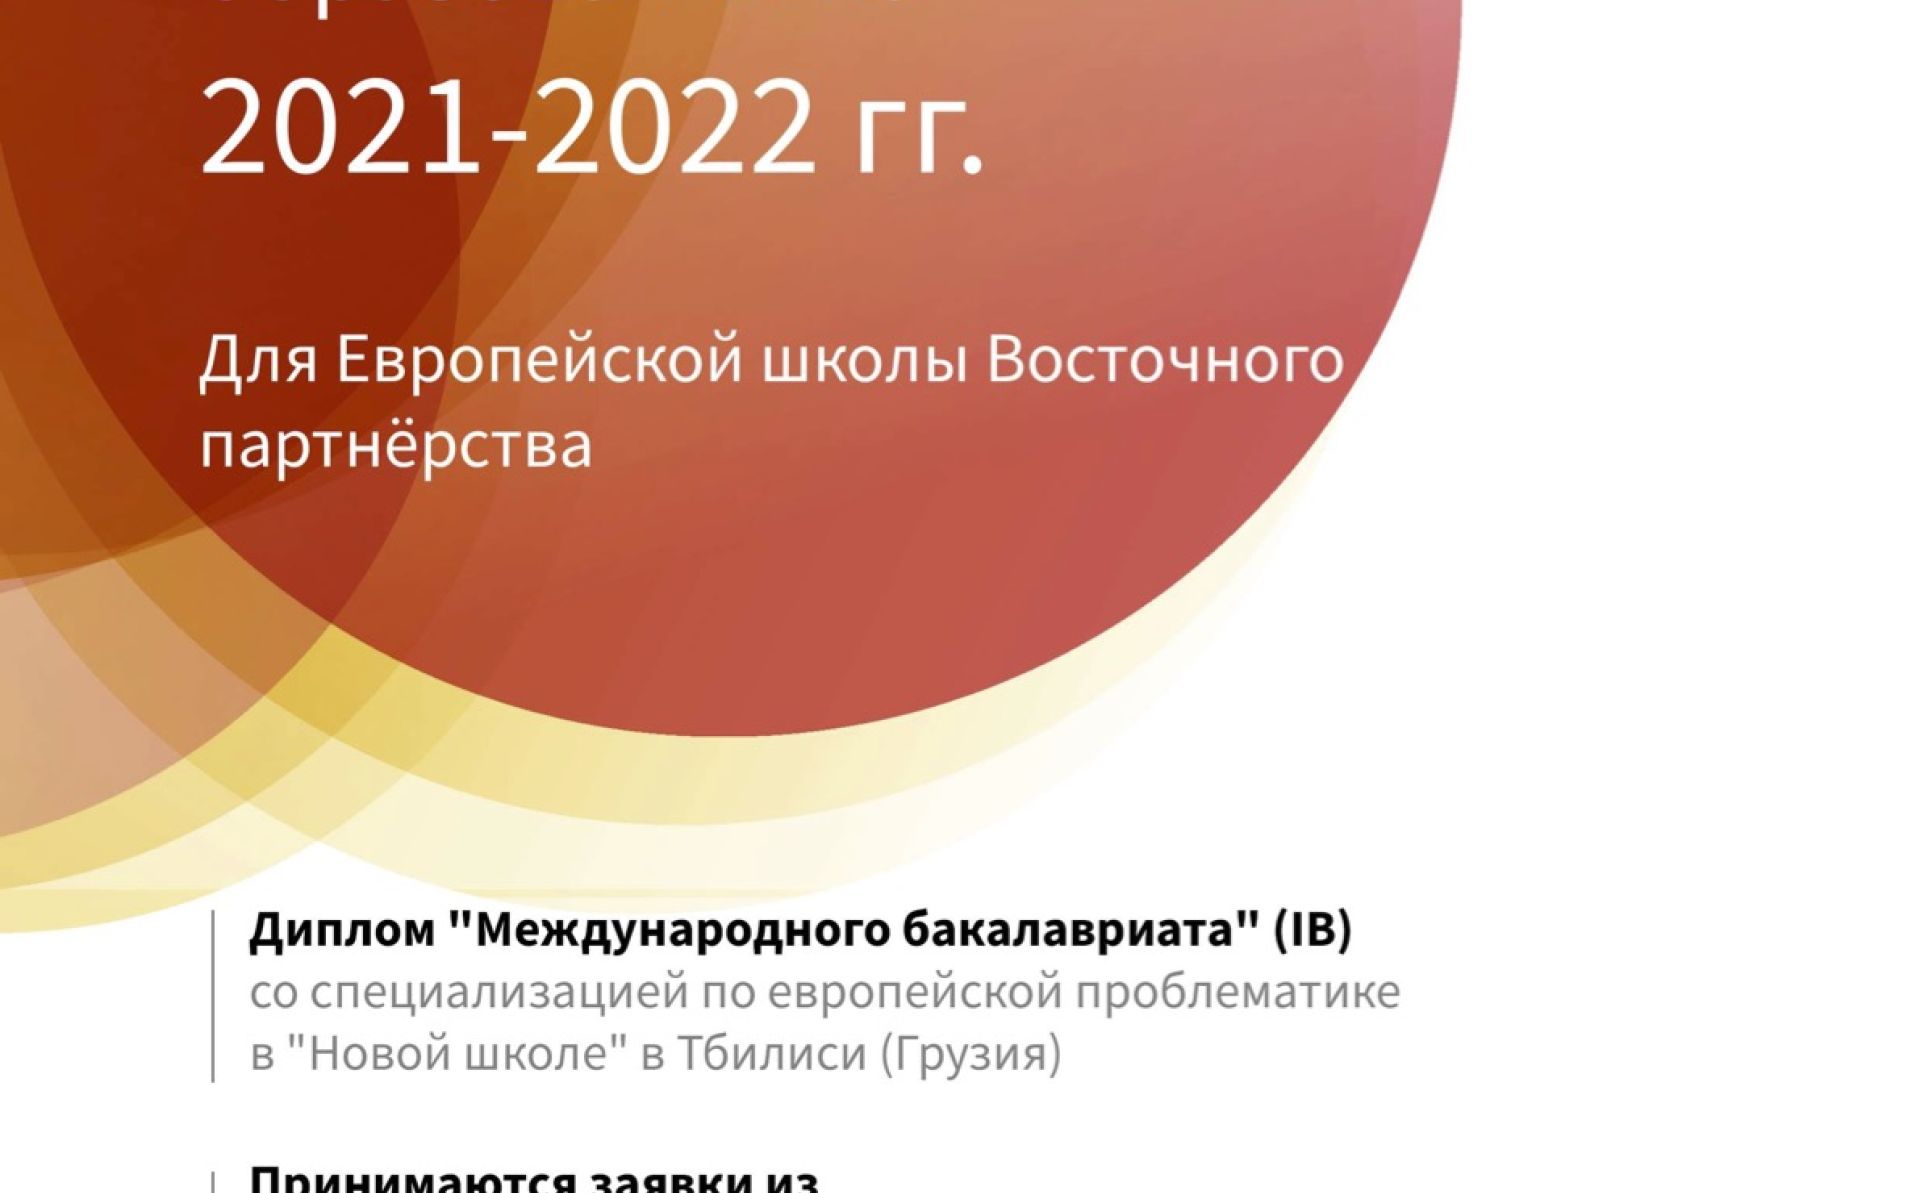 Стипендиальная программа Европейской школы Восточного партнерства на 2021-2022 годы – информационный лист